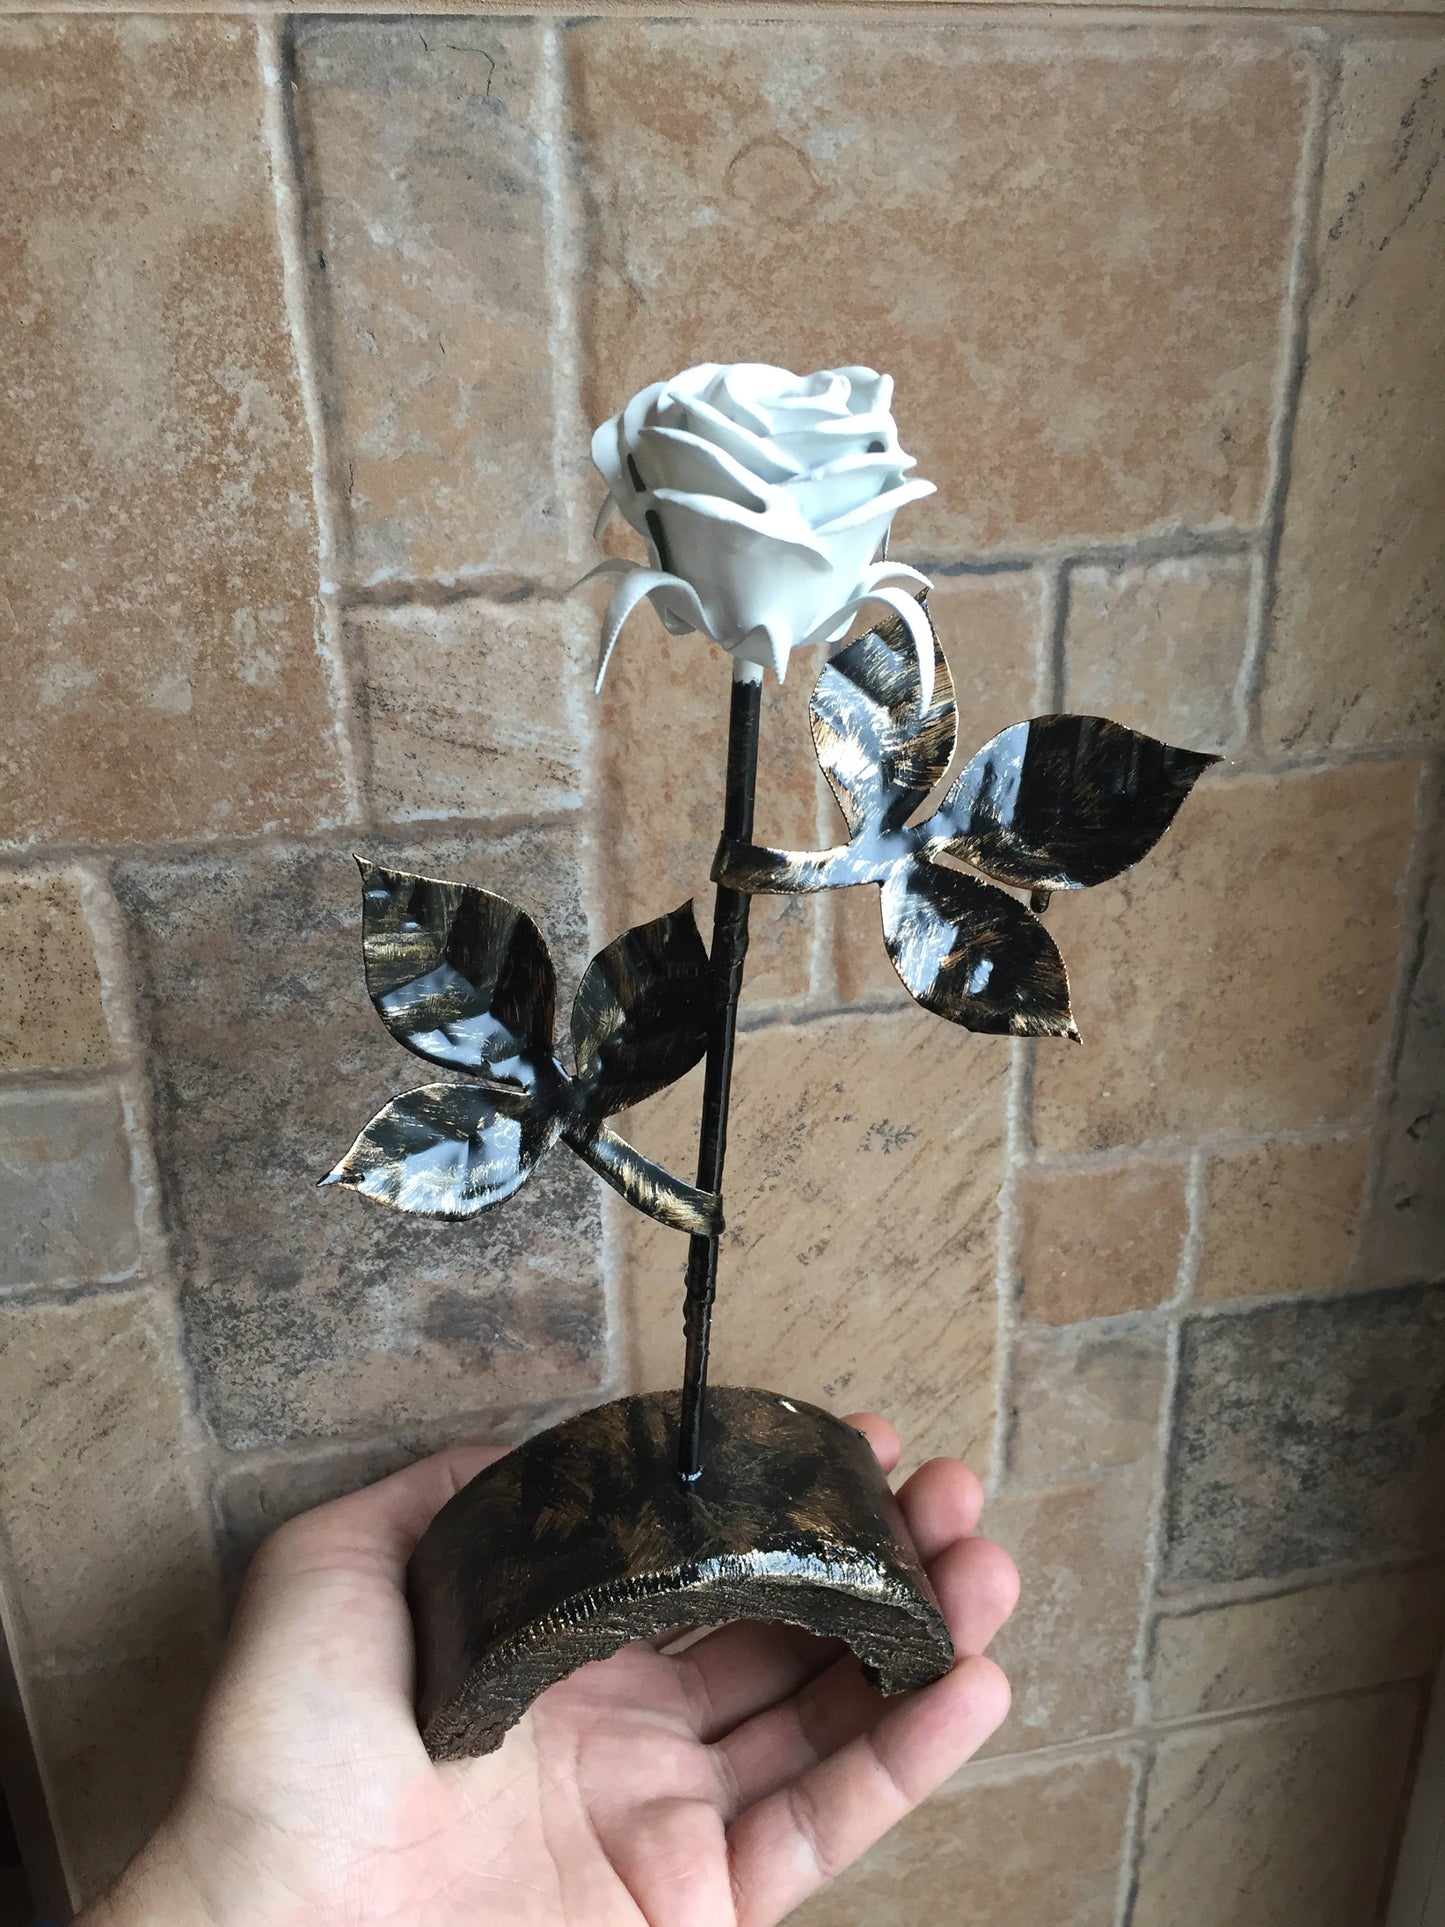 Metal rose, steel rose, wrought iron rose, iron rose, forged rose, hand forged rose, hand made rose, rose sculpture, iron rose gift,her rose